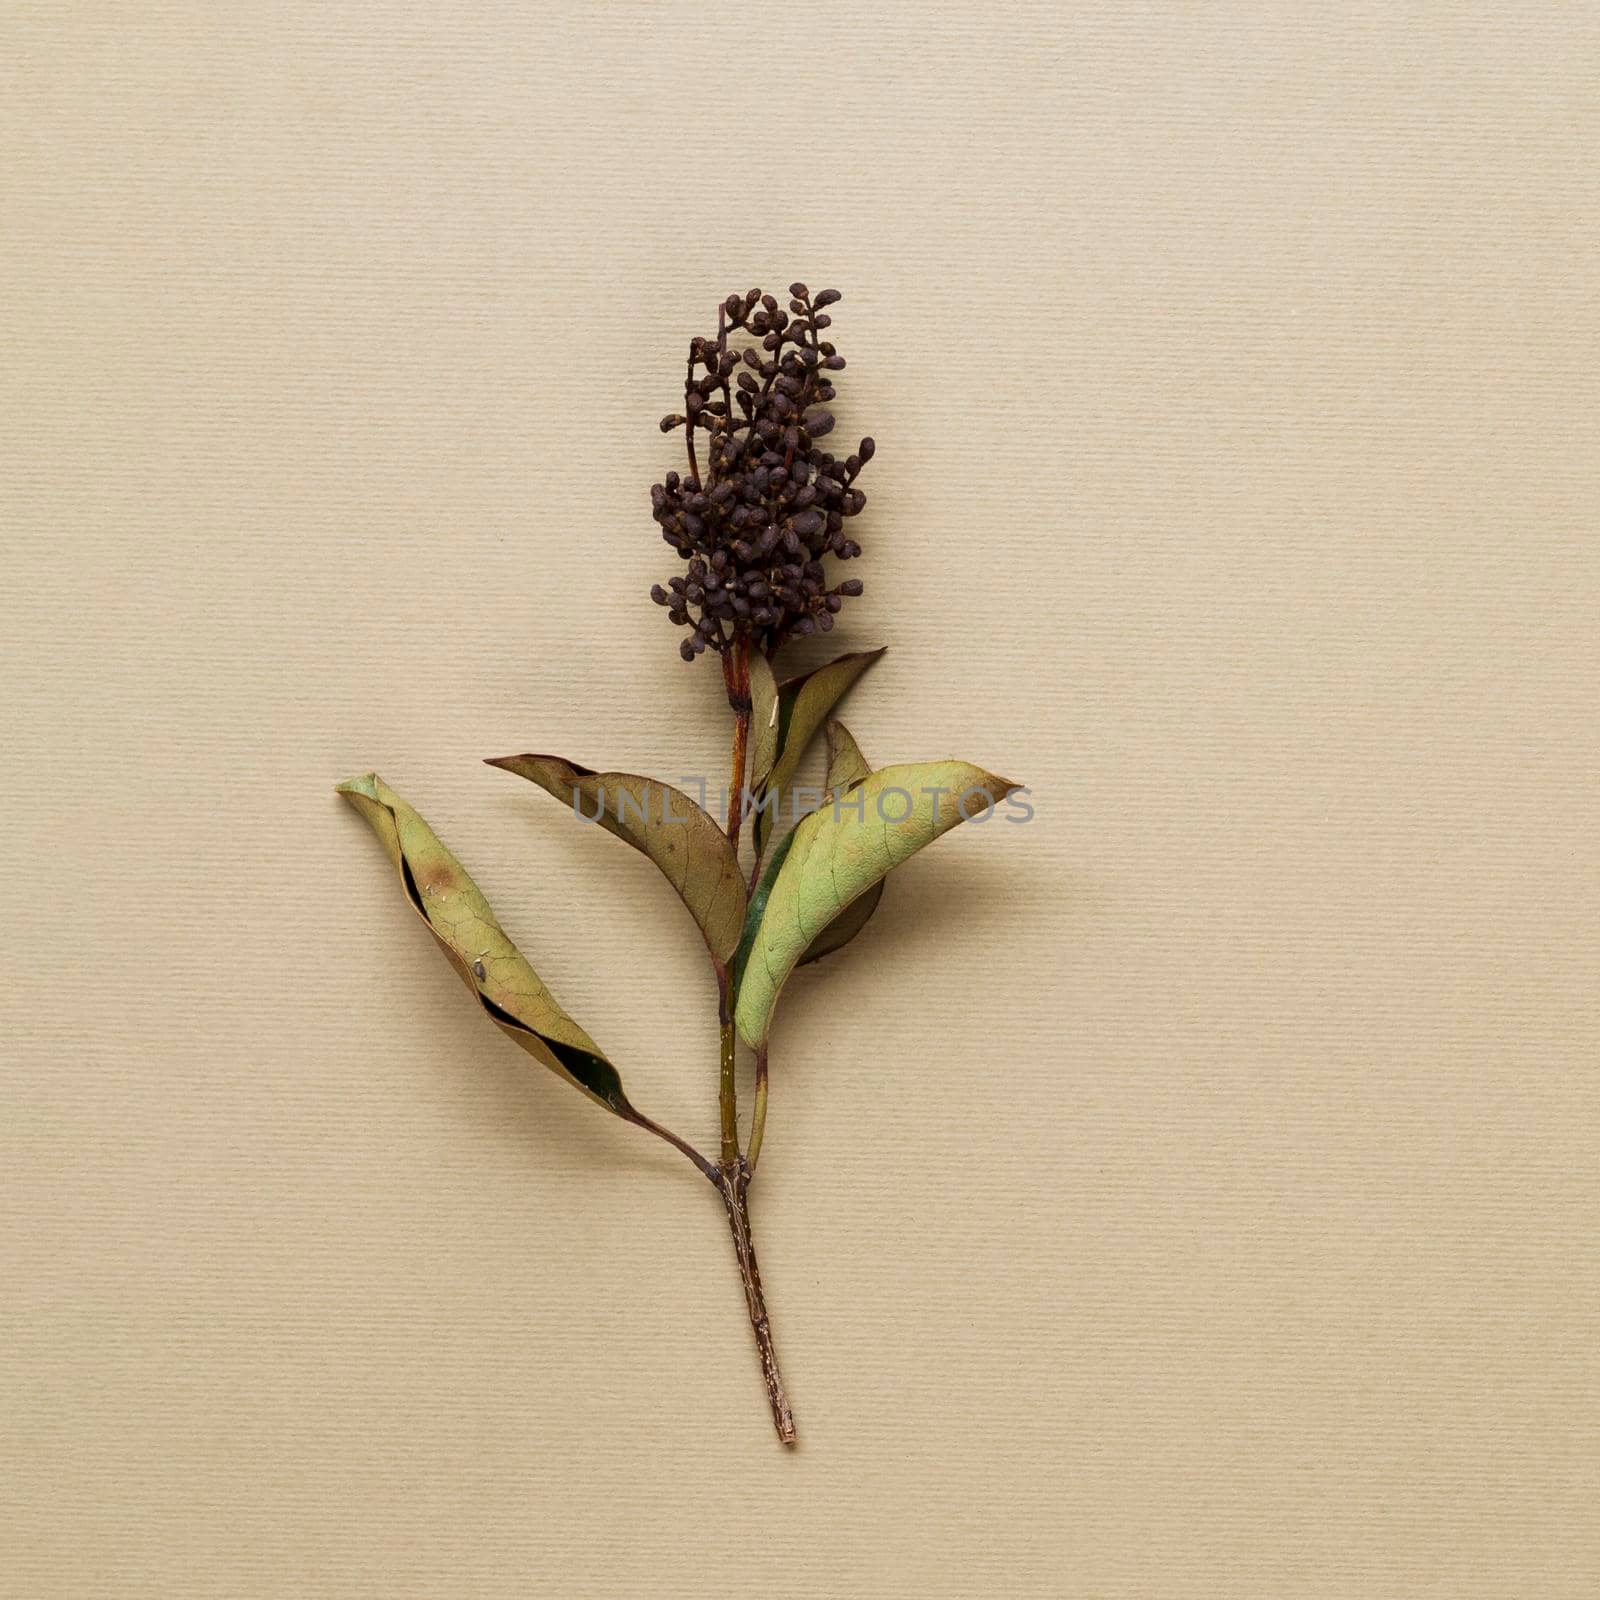 dried plant stem beige background. High quality photo by Zahard